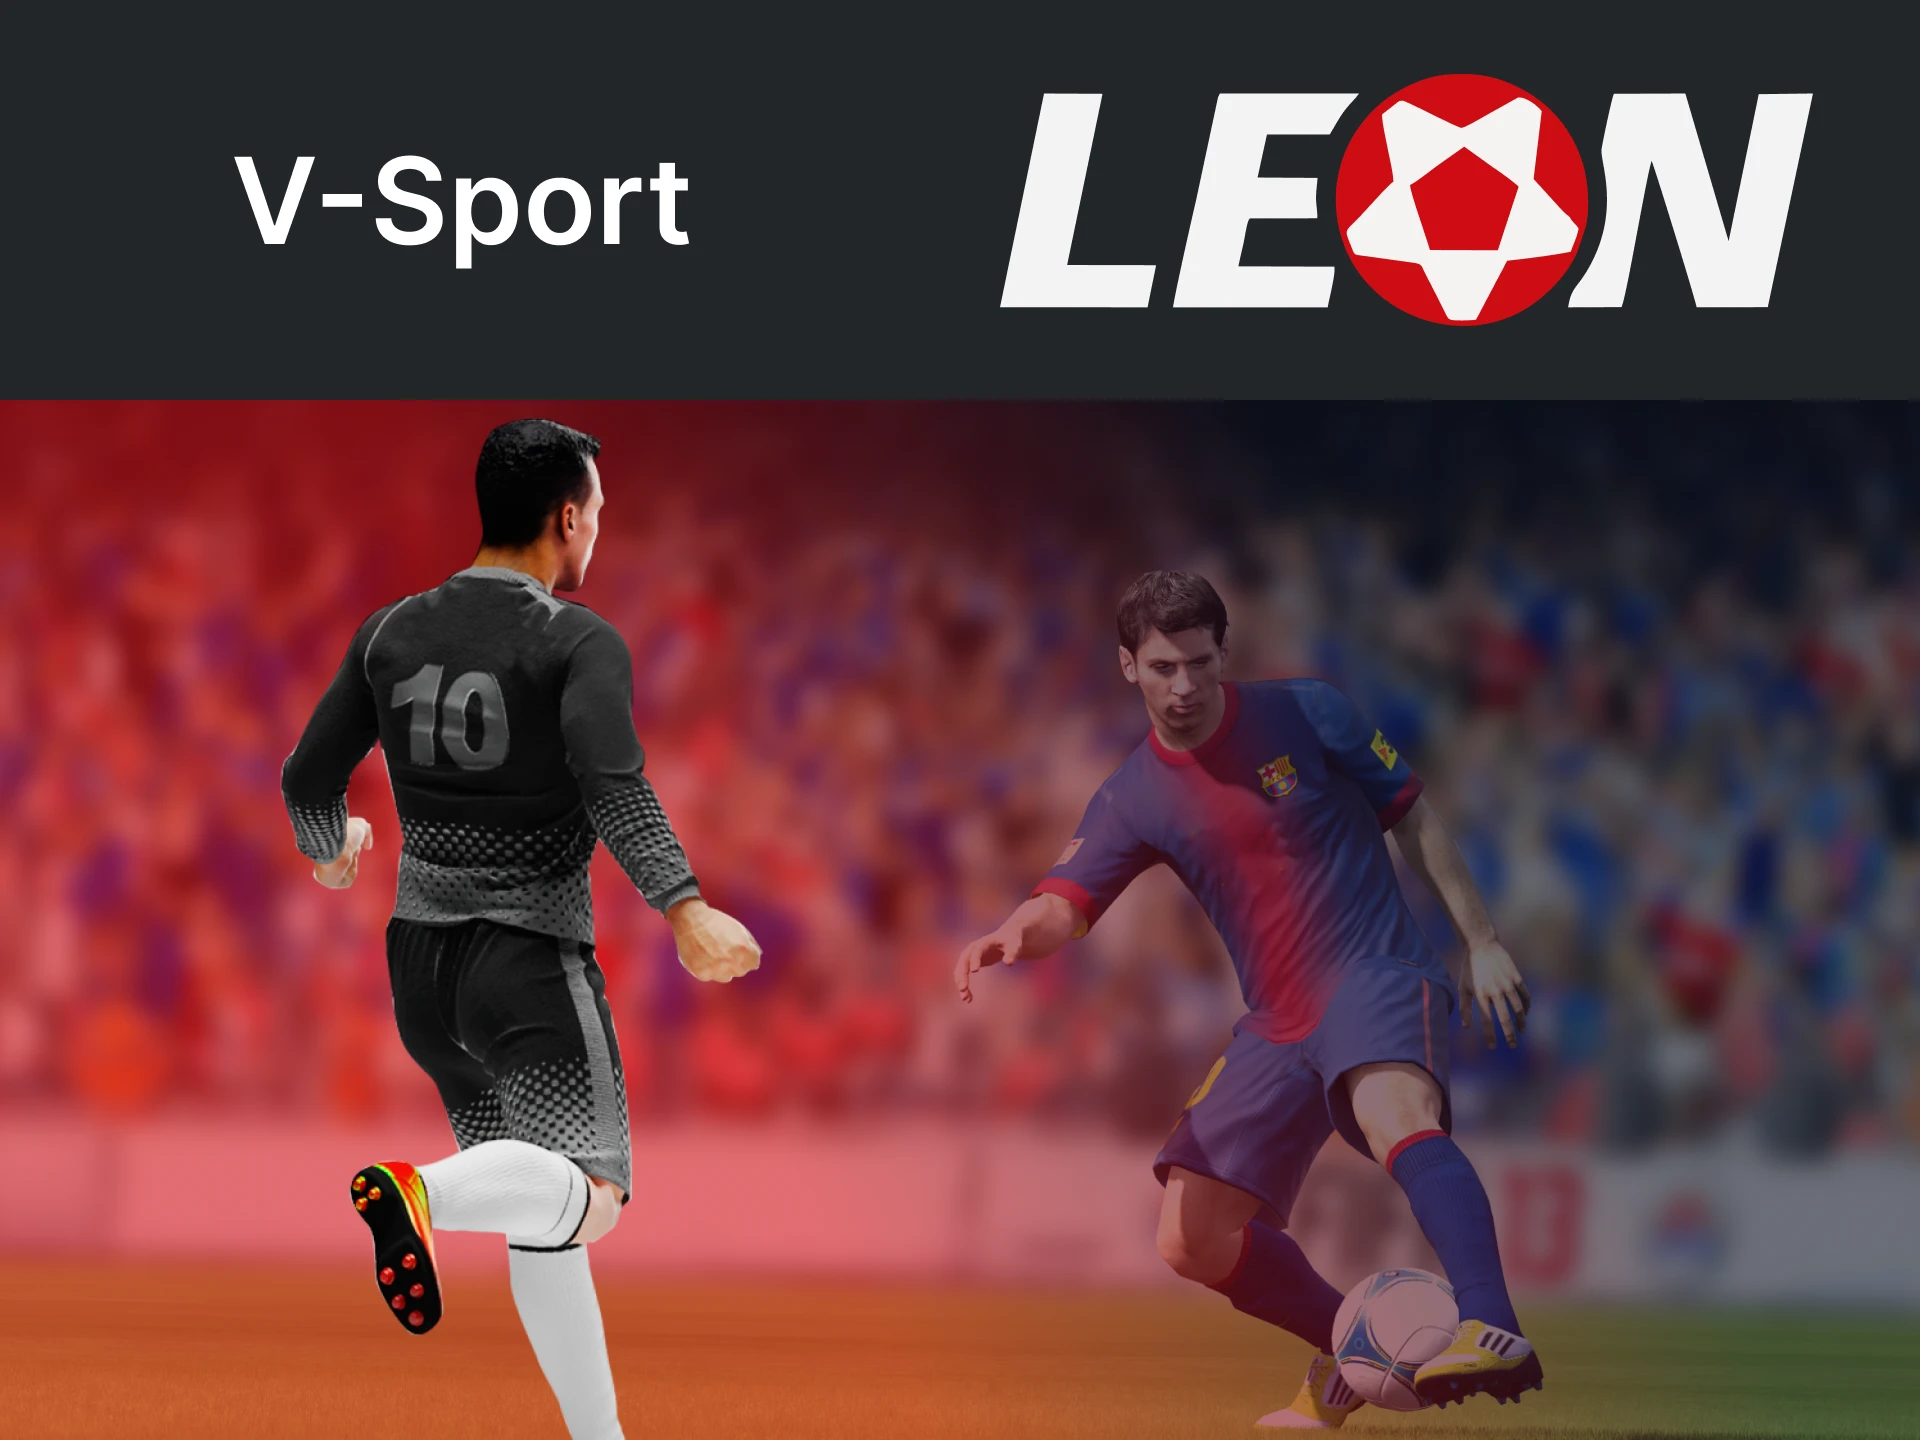 Faça apostas no V-Sport com Leonbet.